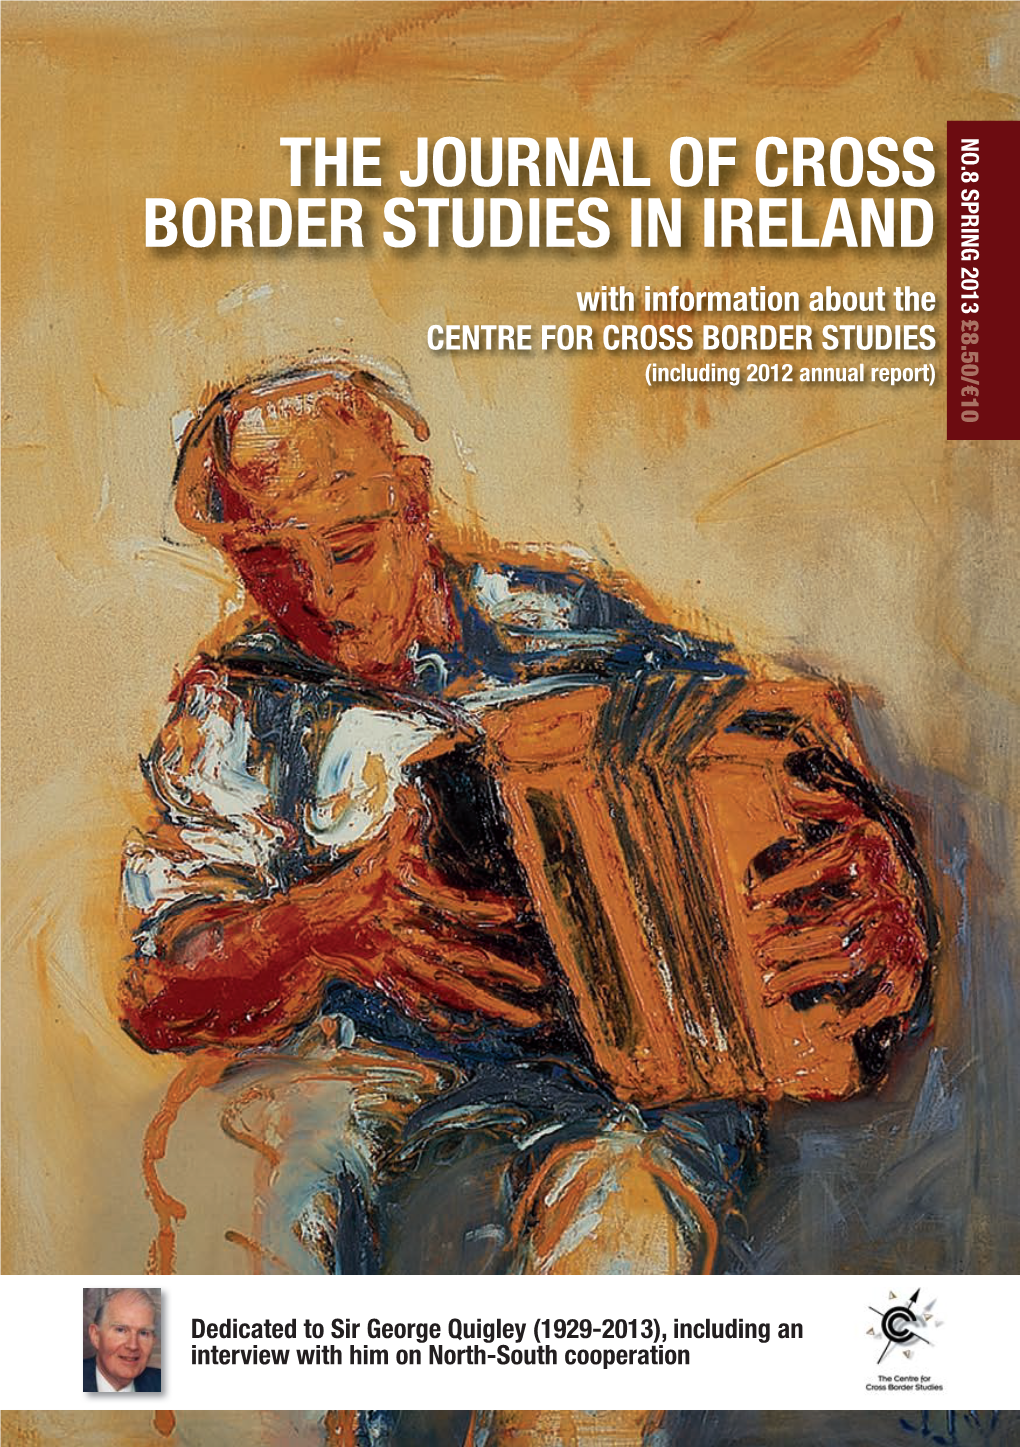 The Journal of Cross Border Studies in Ireland